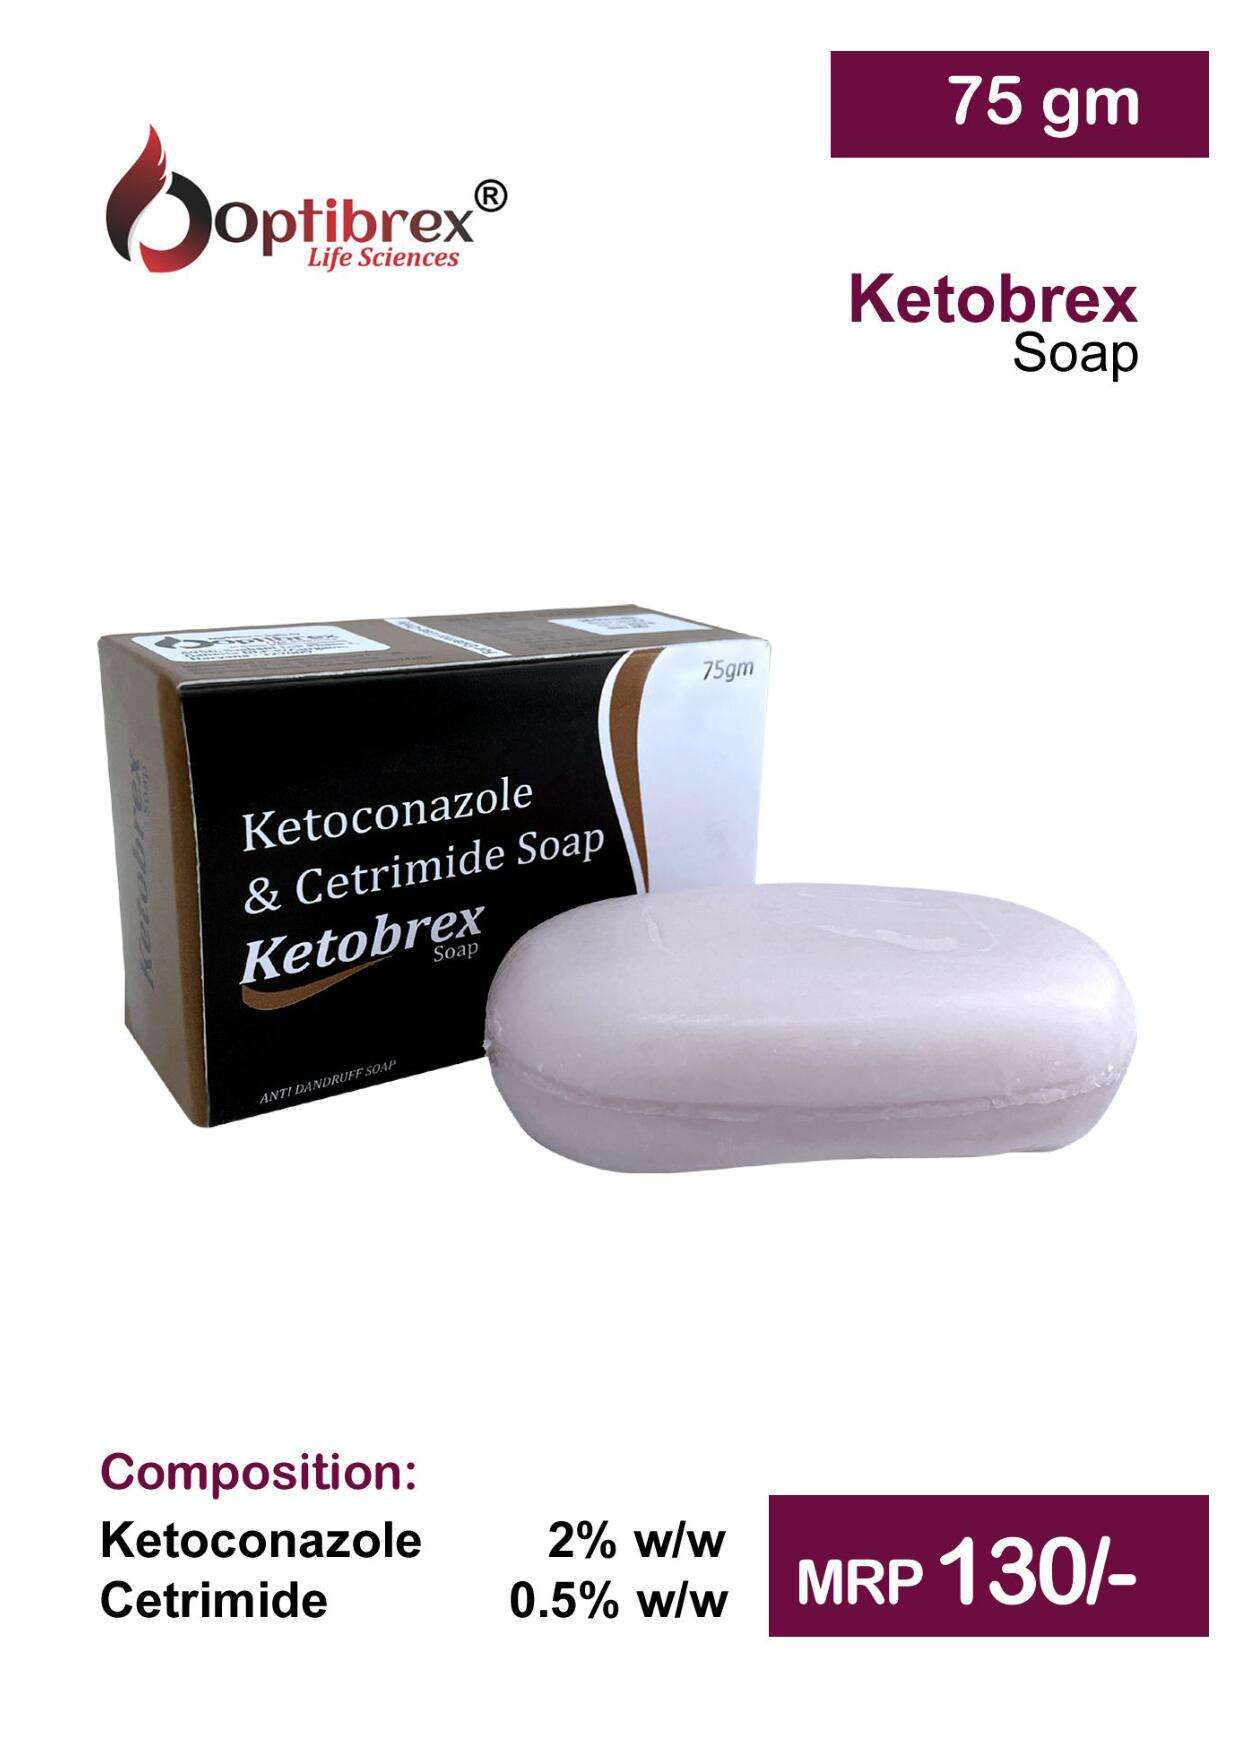 ketoconazole 2% w/w + cetrimide0.
5% w/w soap